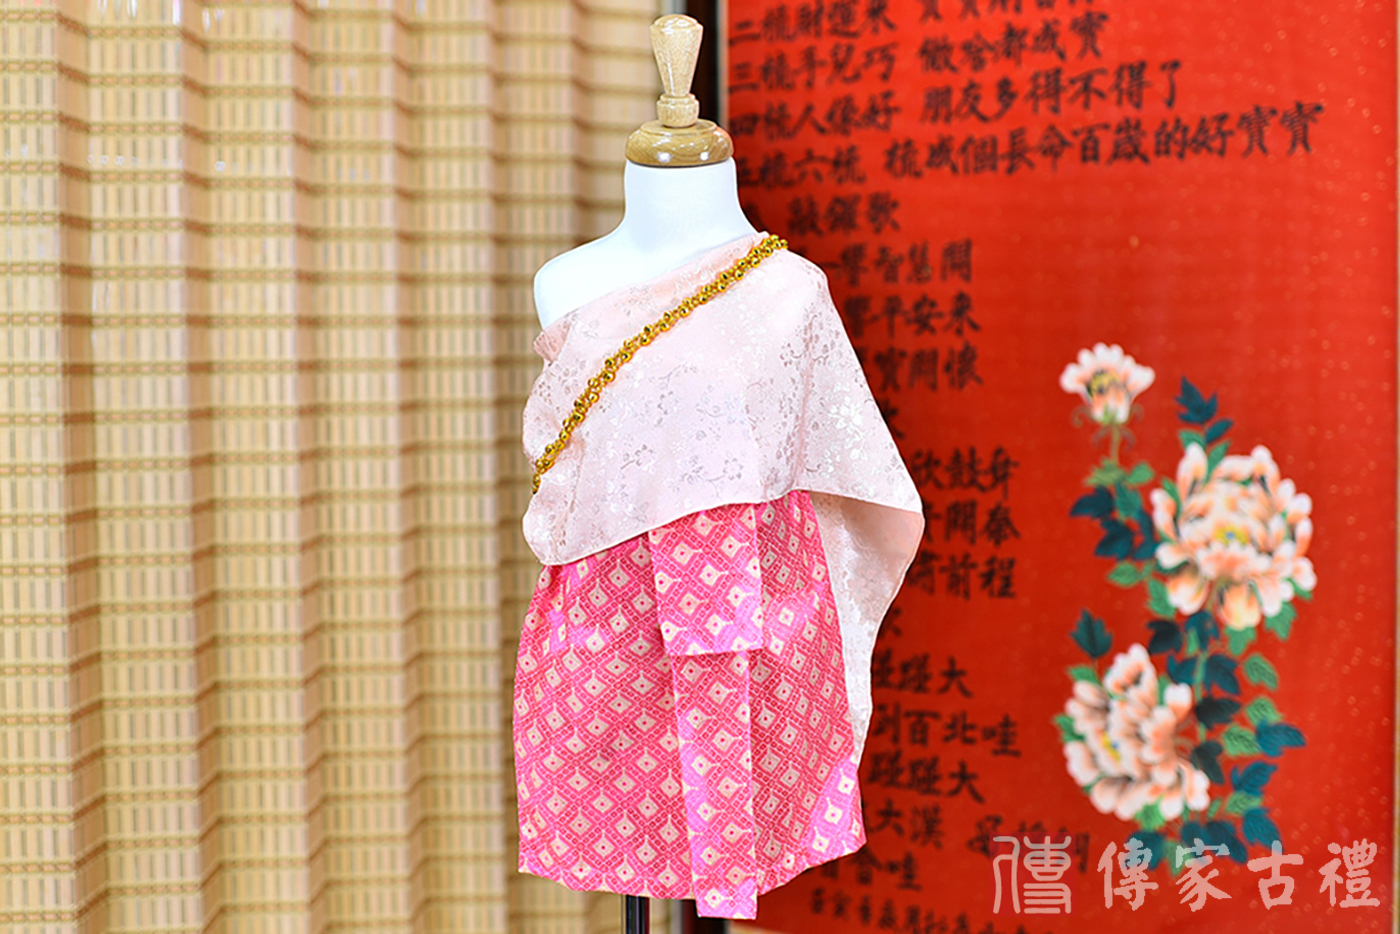 2024-02-22小孩皇室泰服古裝禮服。淺粉色的紋路披肩搭配粉色小金方格狀裙裝的泰式古裝禮服。照片集